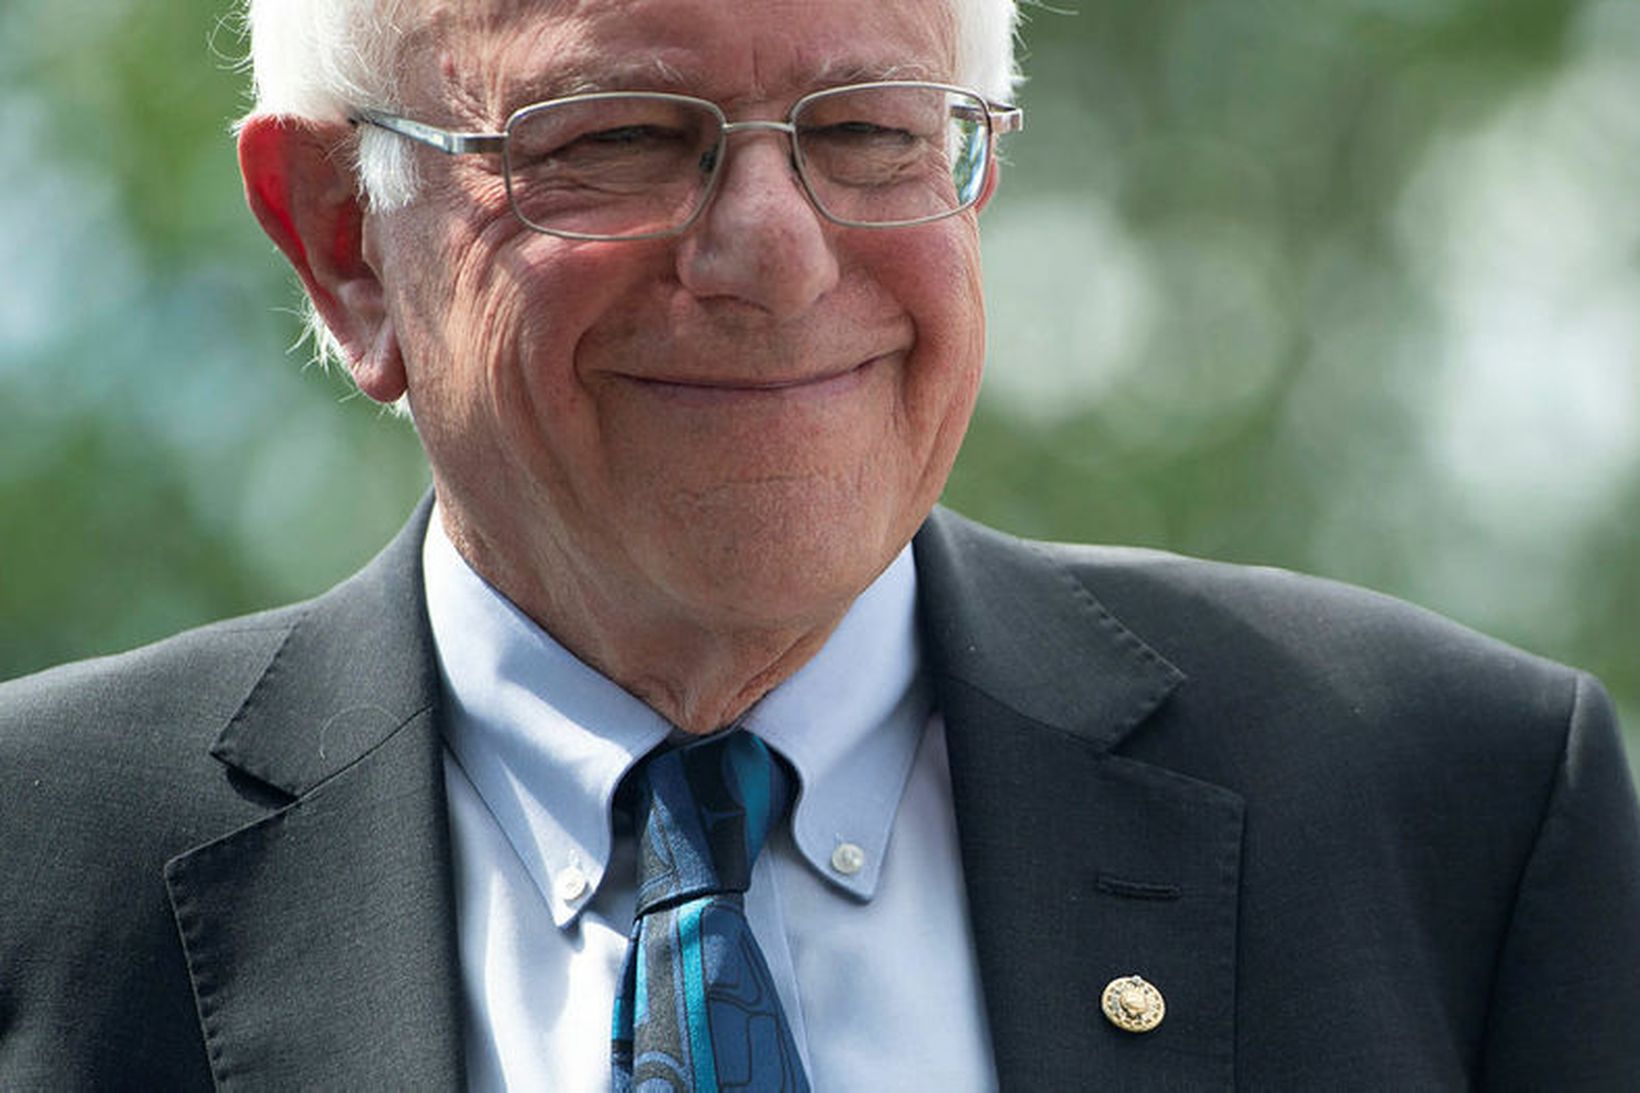 Bernie Sanders kynnti 2.200 milljarða dala menntaáætlun sína í gær. …